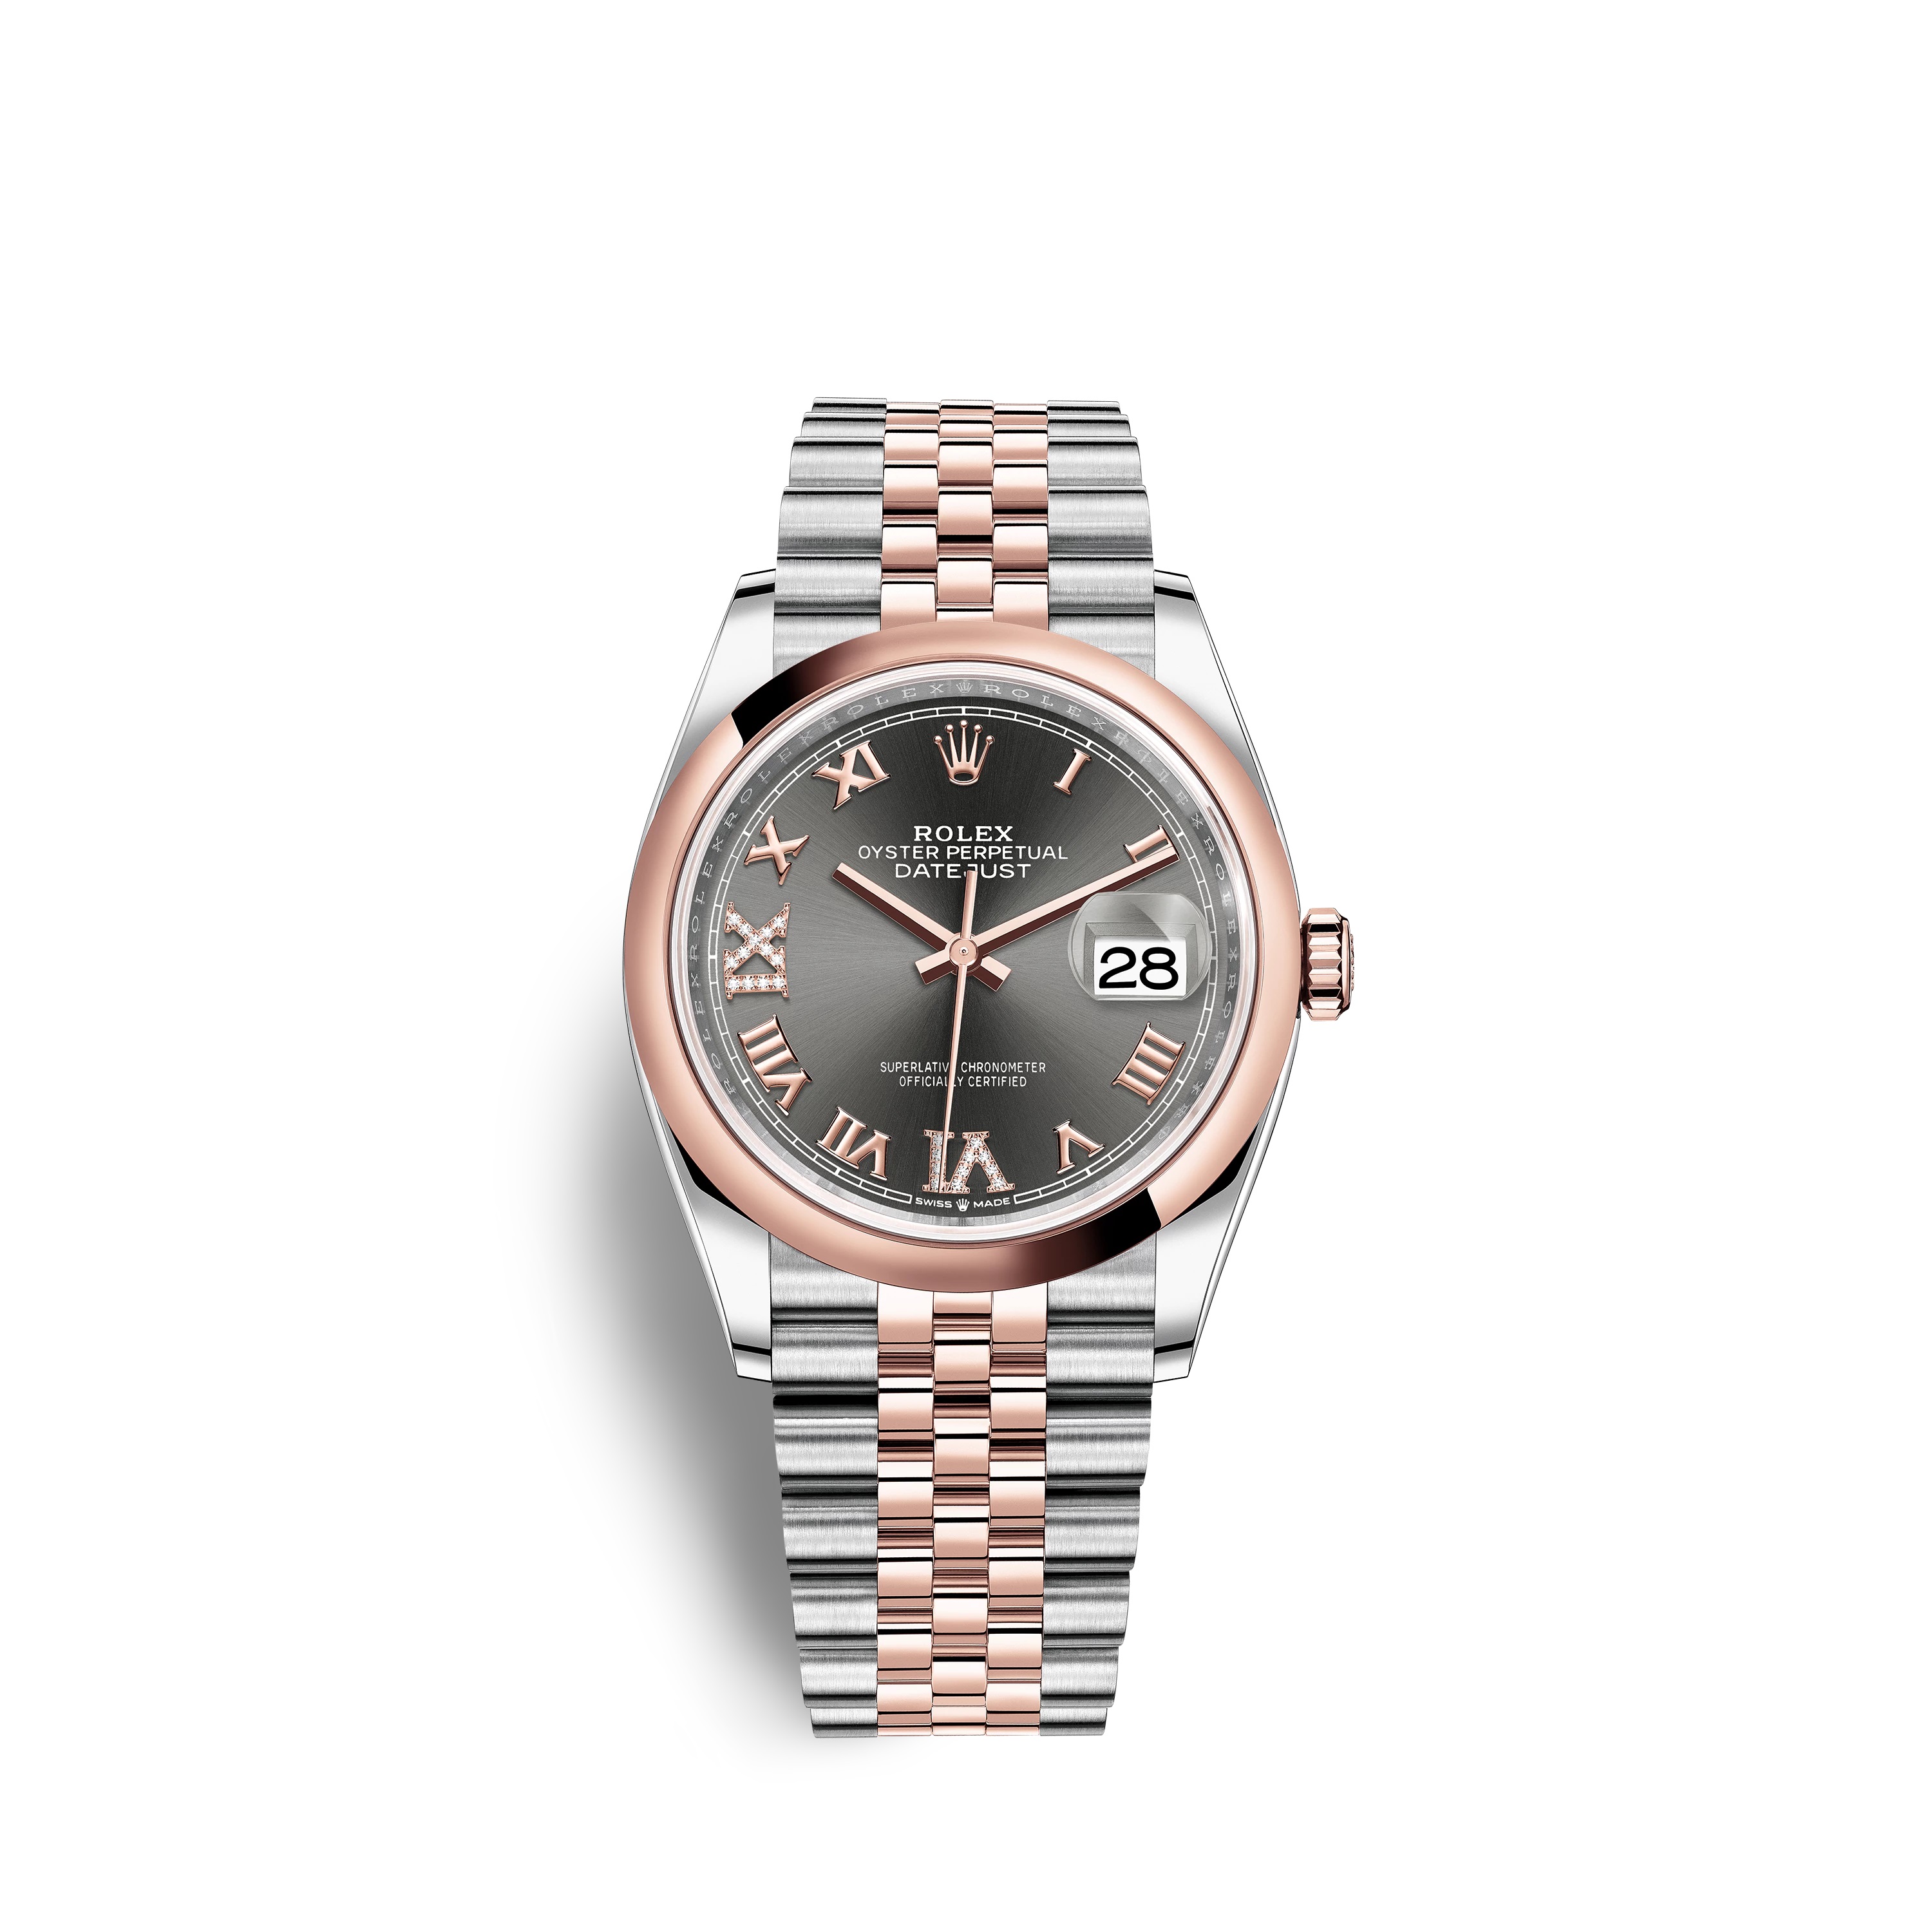 Datejust 36 126201 Rose Gold & Stainless Steel Watch (Dark Rhodium Set with Diamonds)